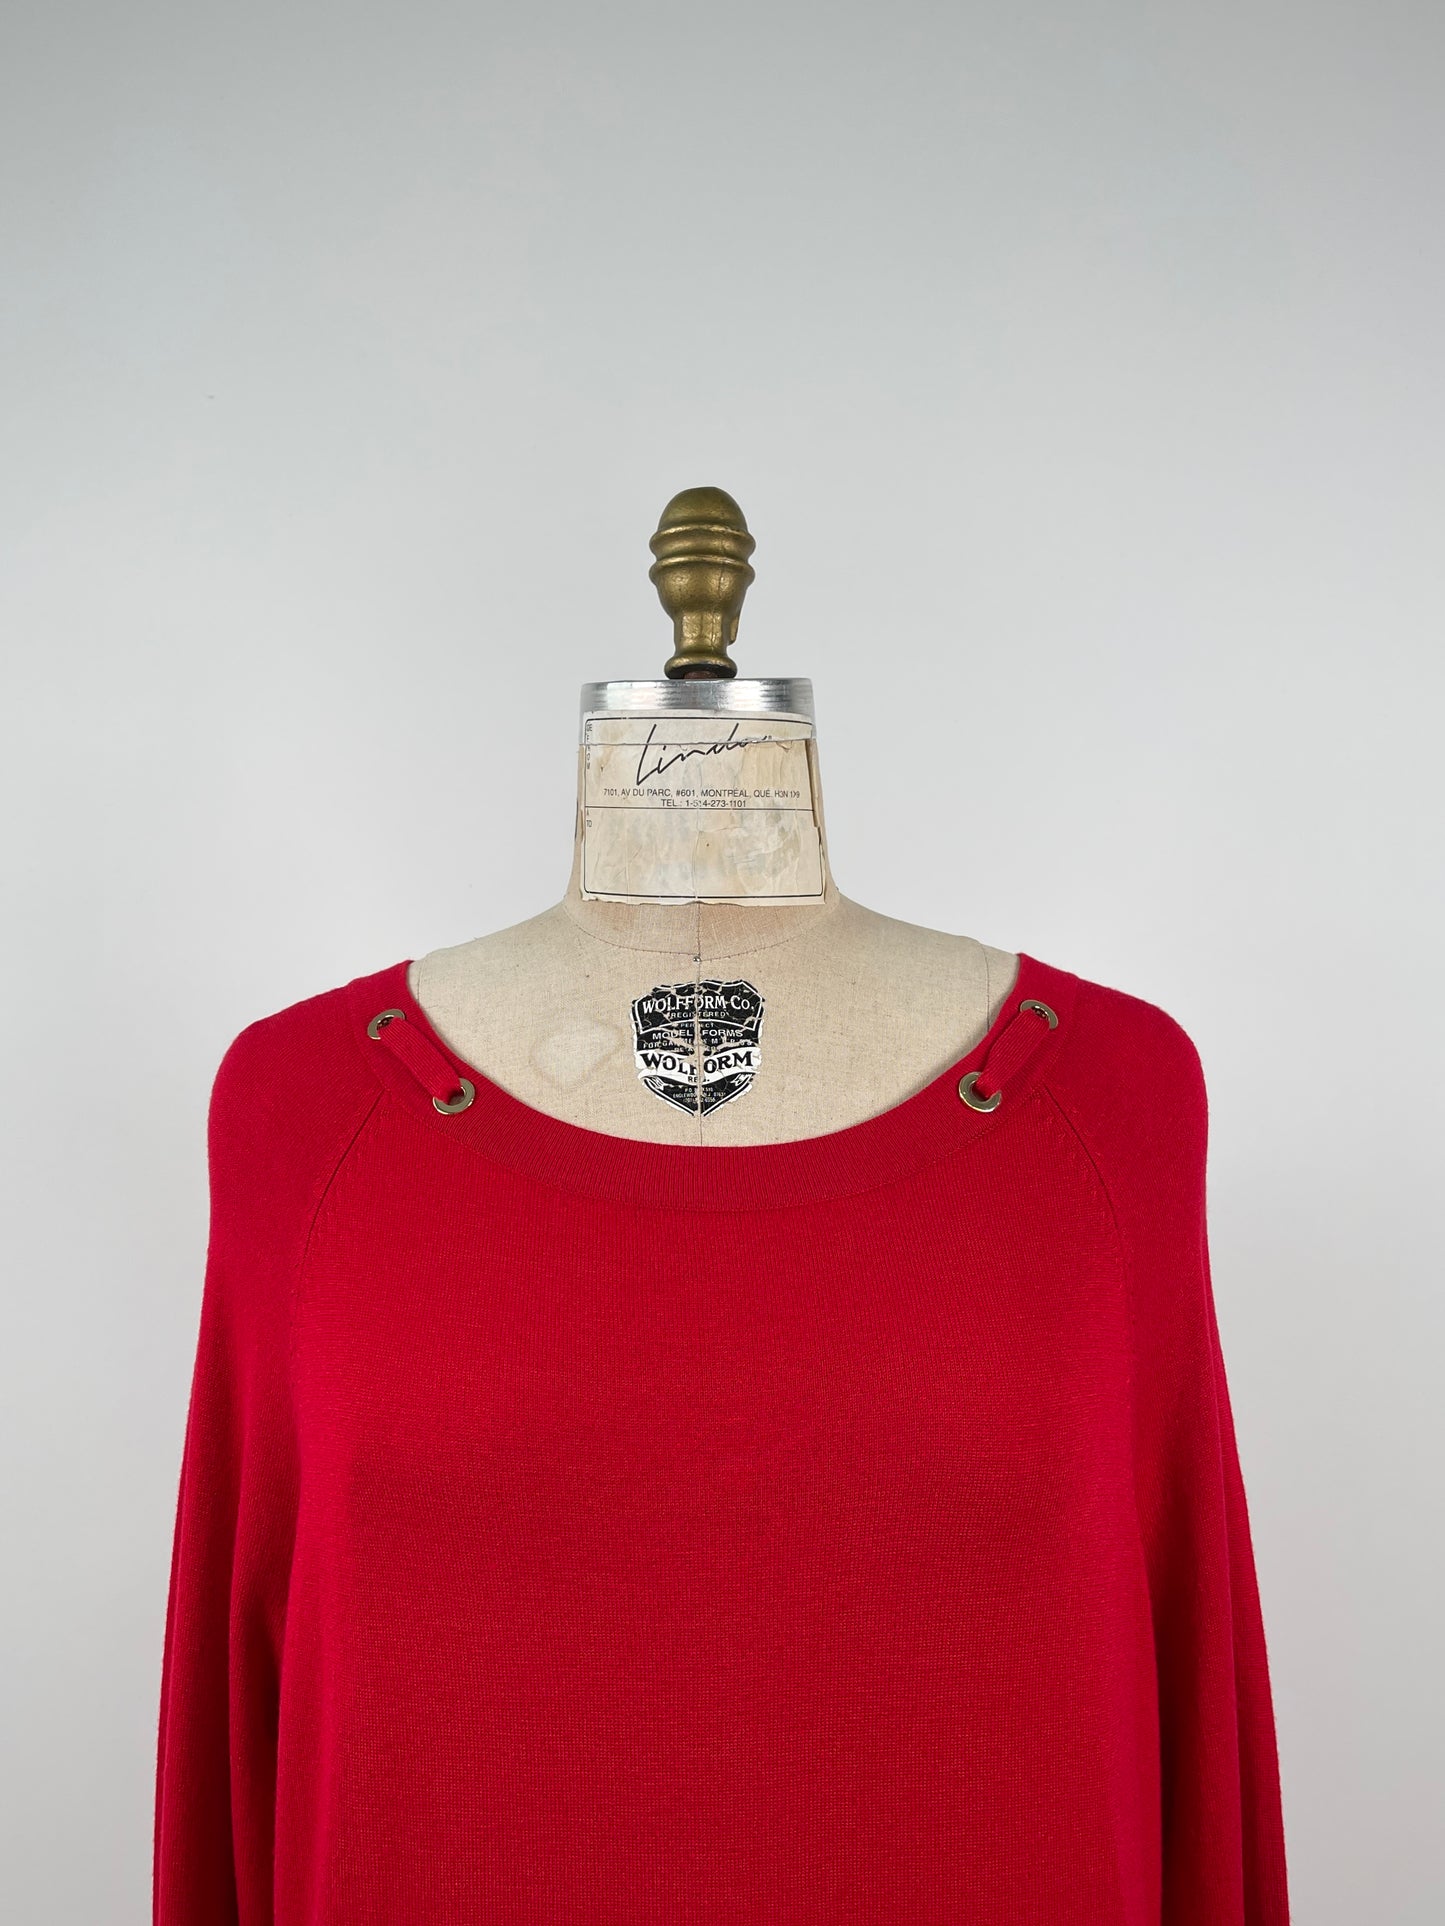 Robe rouge en tricot à oeillets dorés (M/L)